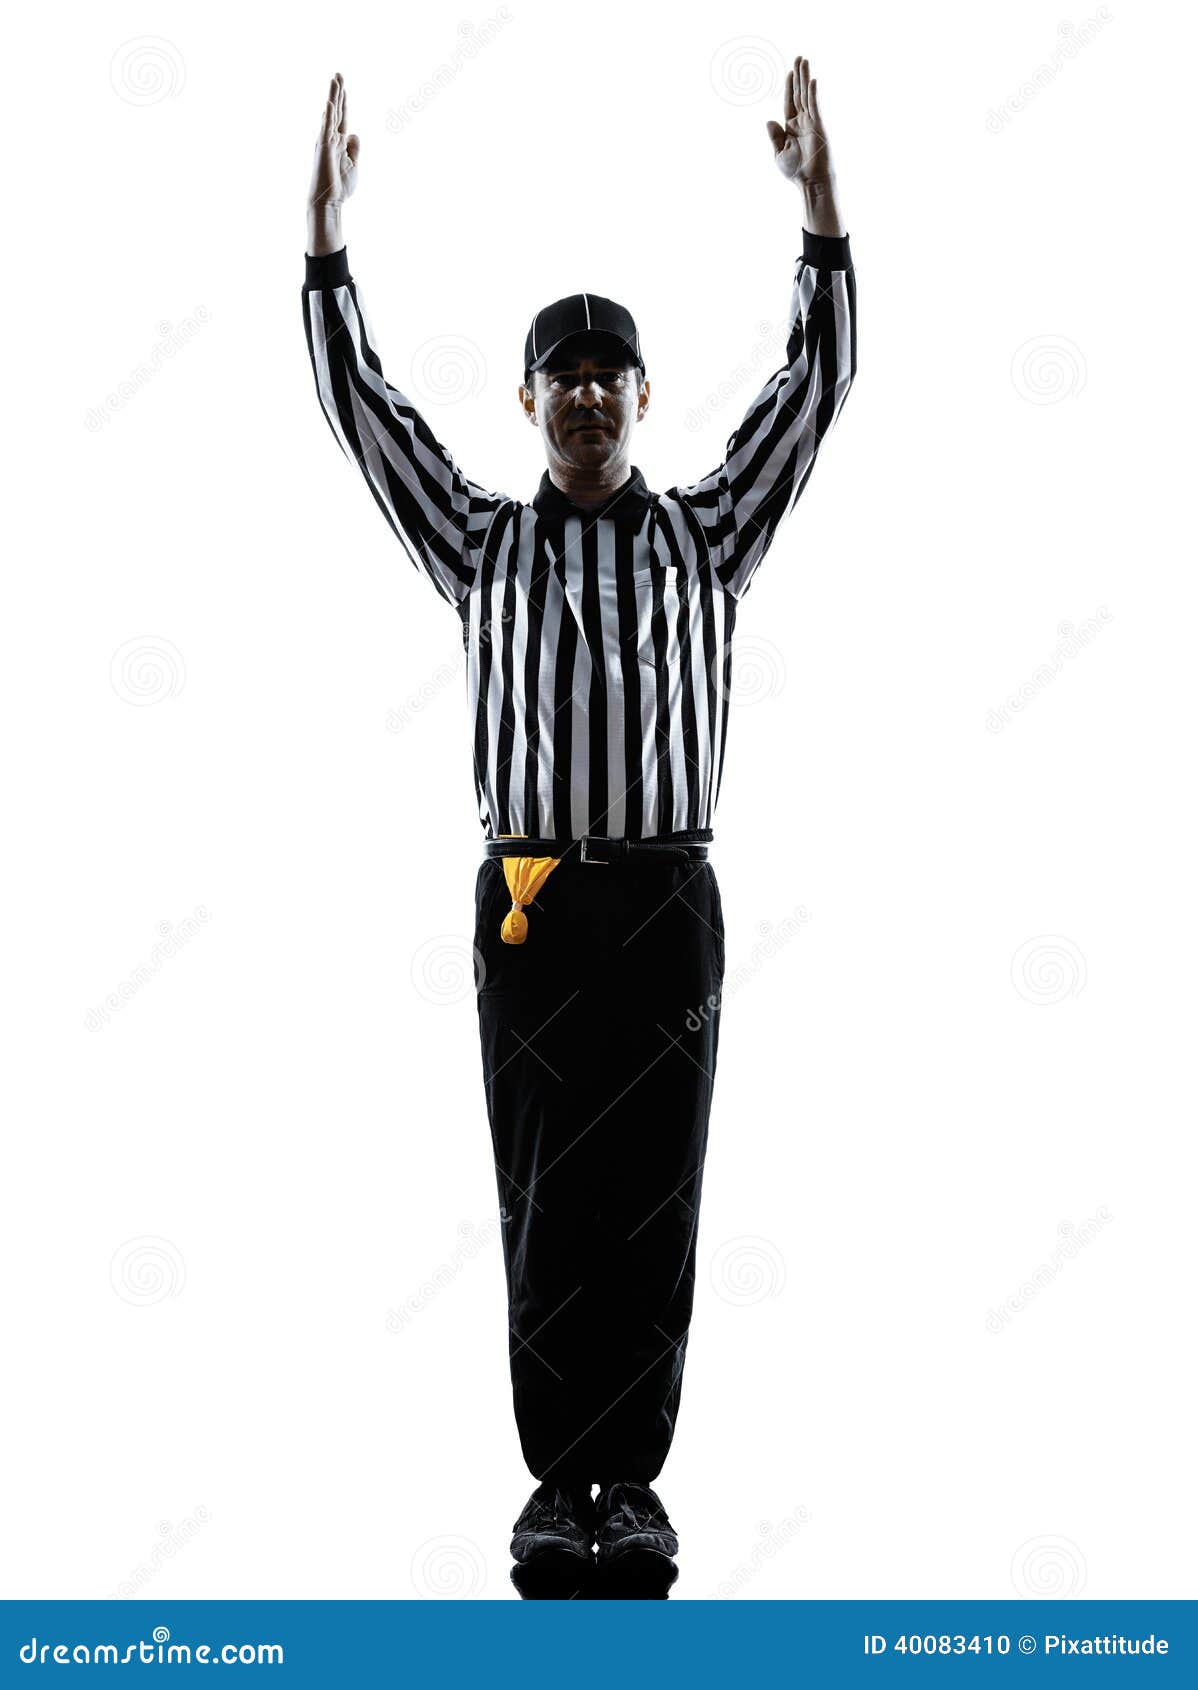 football referee clipart - photo #41